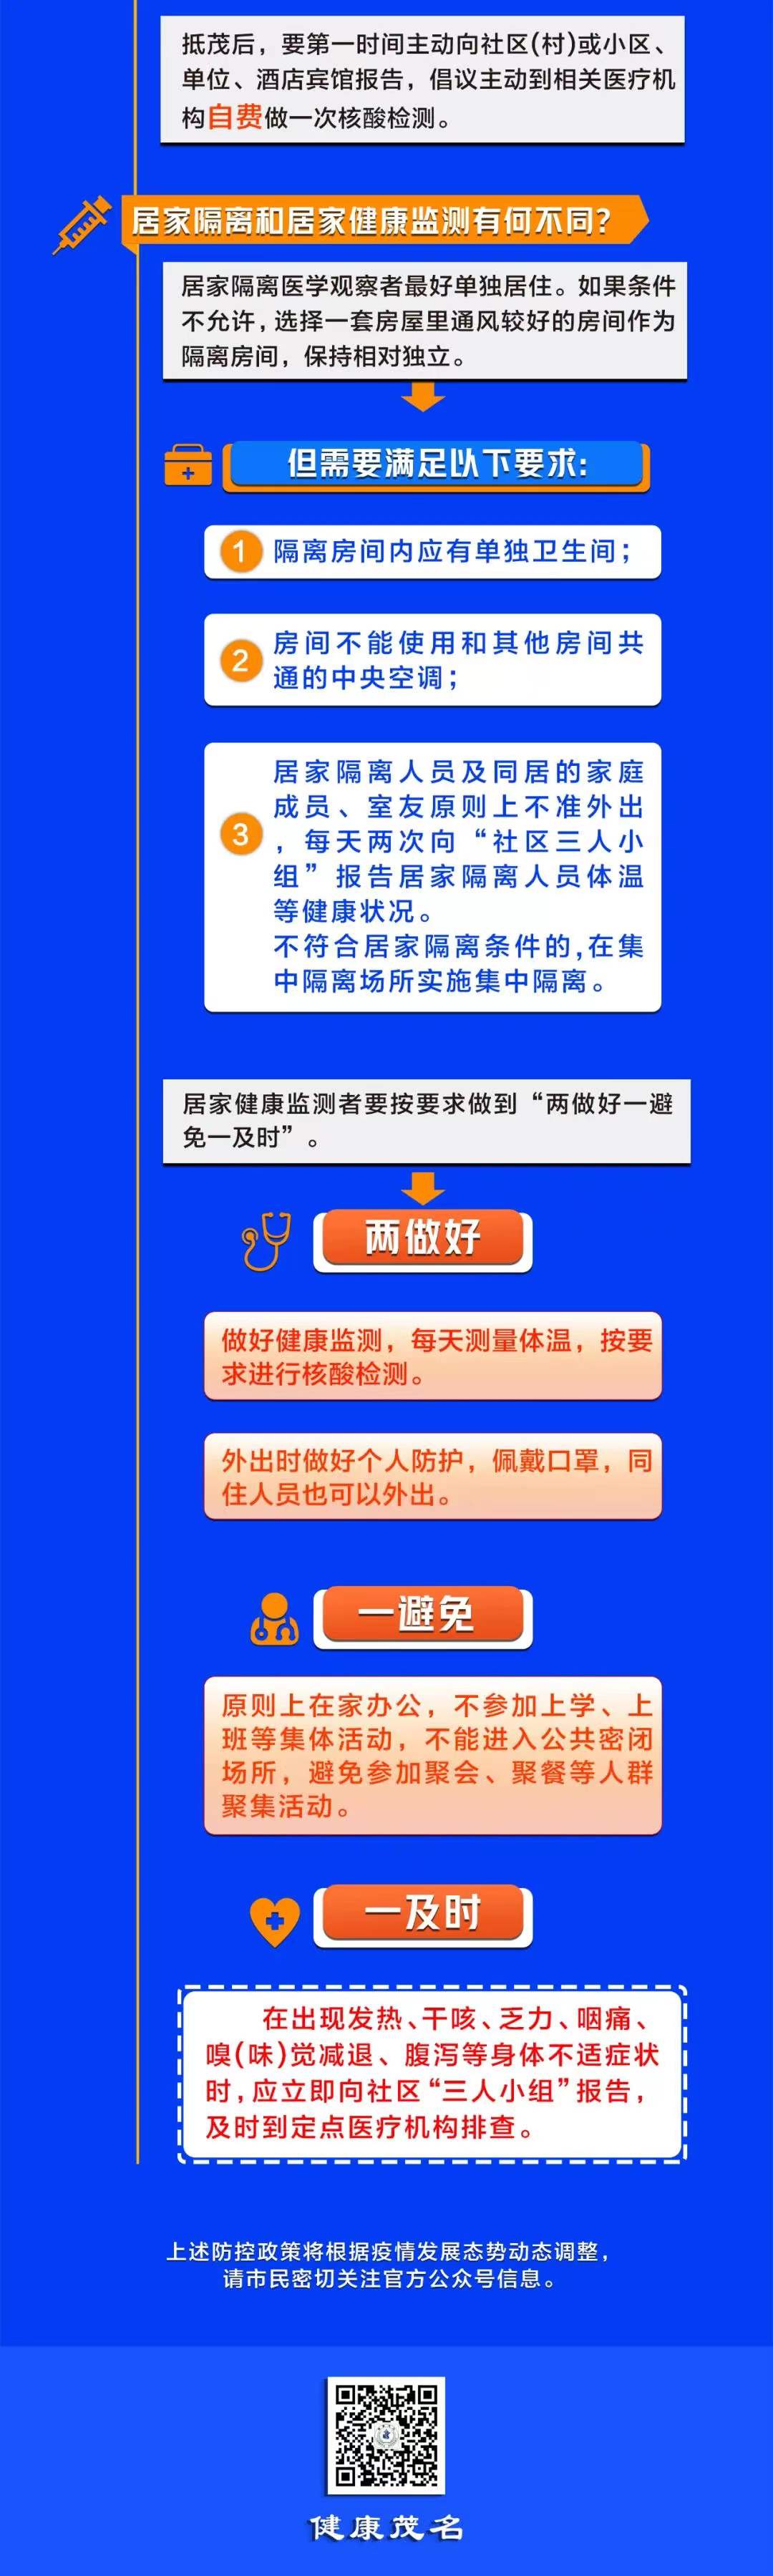 2022年春节期间从深圳、中山、珠海来（返）茂名地区的人员健康管理指引。 8